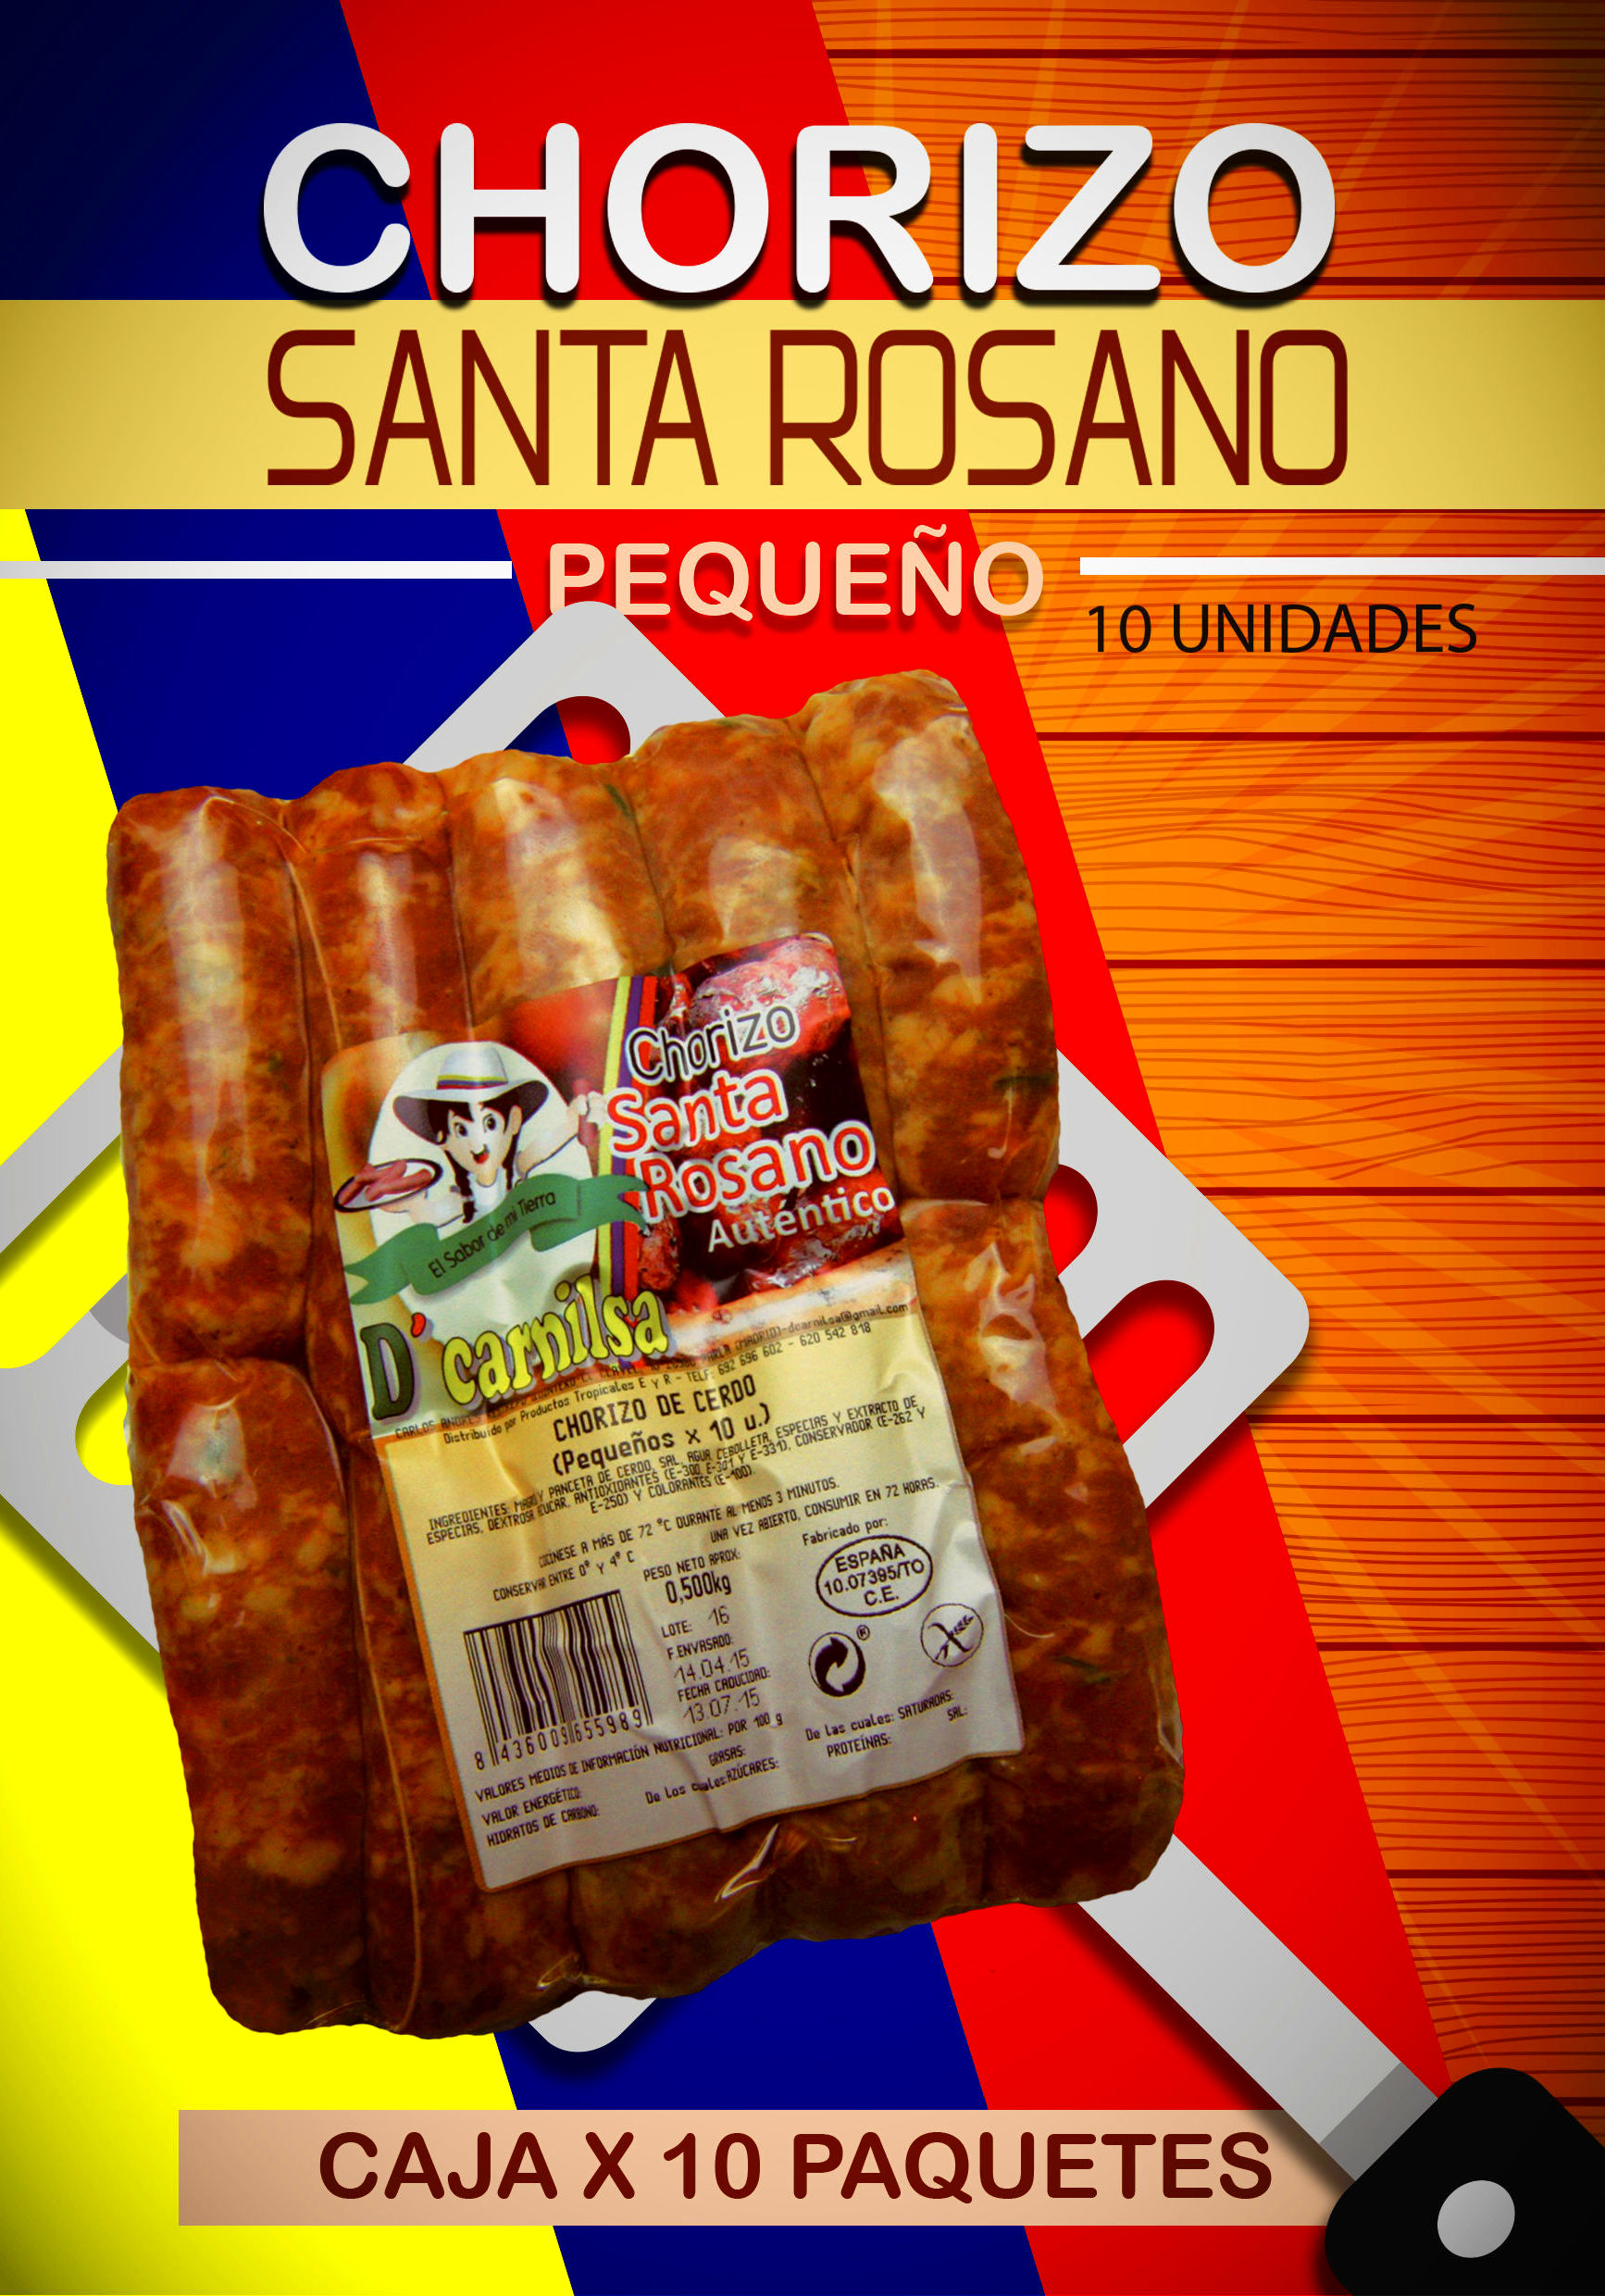 Chorizo ahumados Santa rosano x 10: PRODUCTOS de La Cabaña 5 continentes